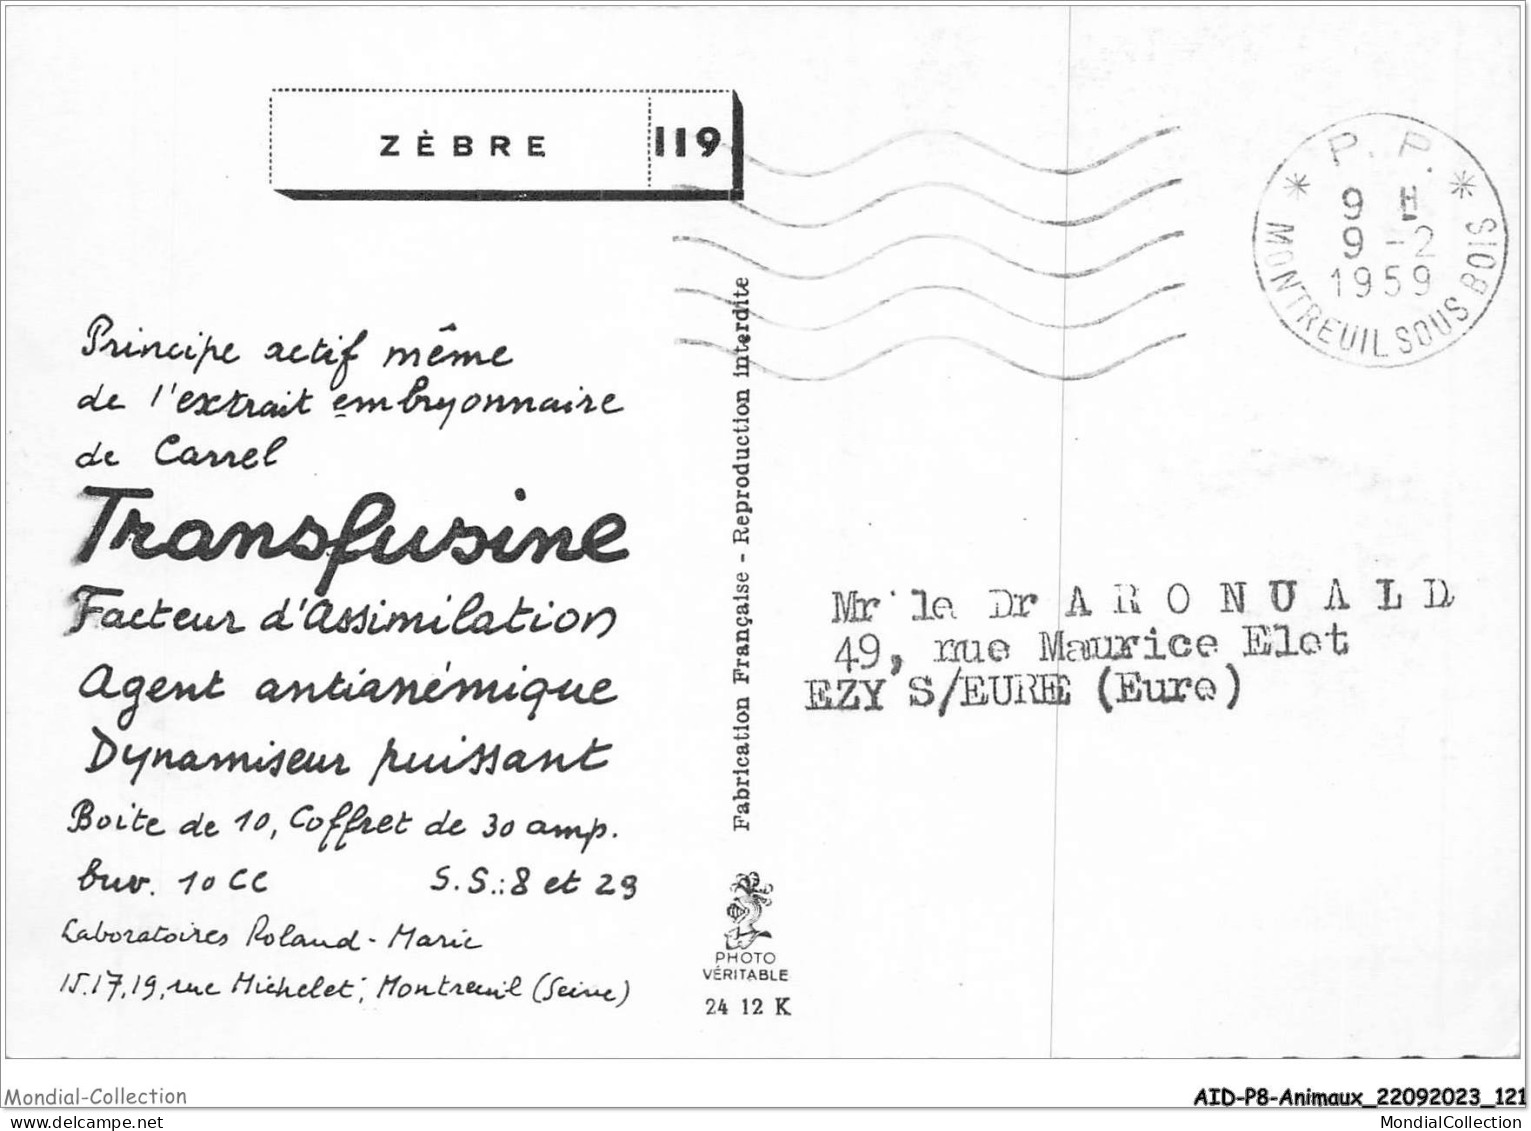 AIDP8-ANIMAUX-0743 - Zèbre  - Zebre